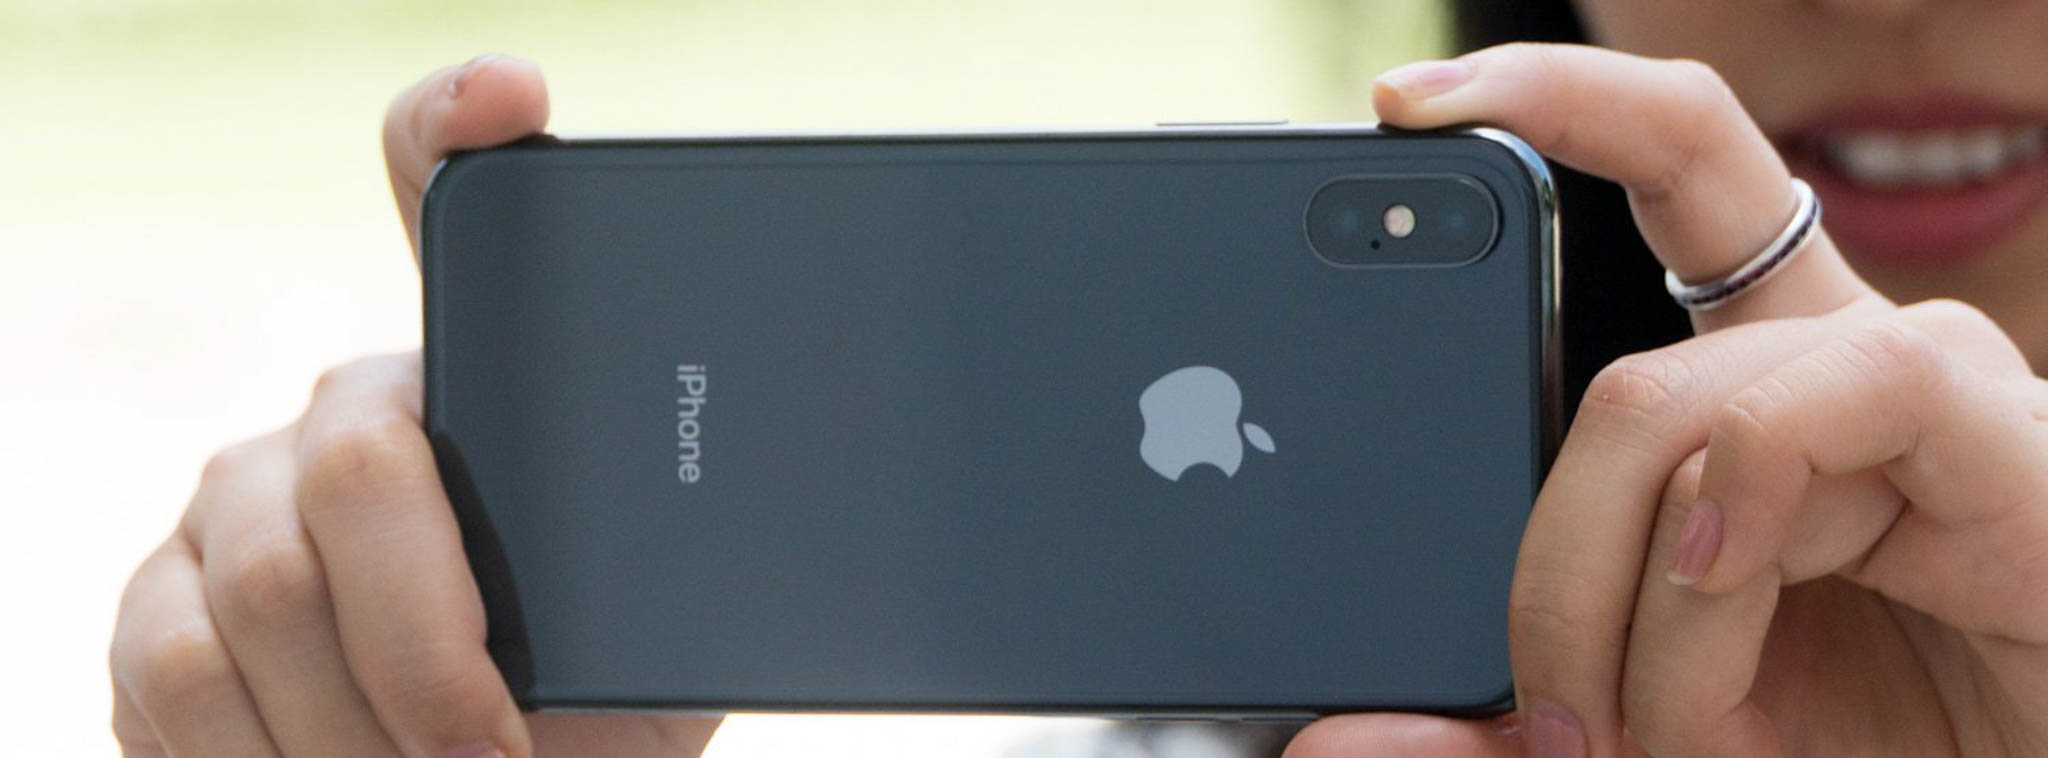 iPhone 2019 sẽ sử dụng cảm biến 3D dựa trên công nghệ laser cho AR?